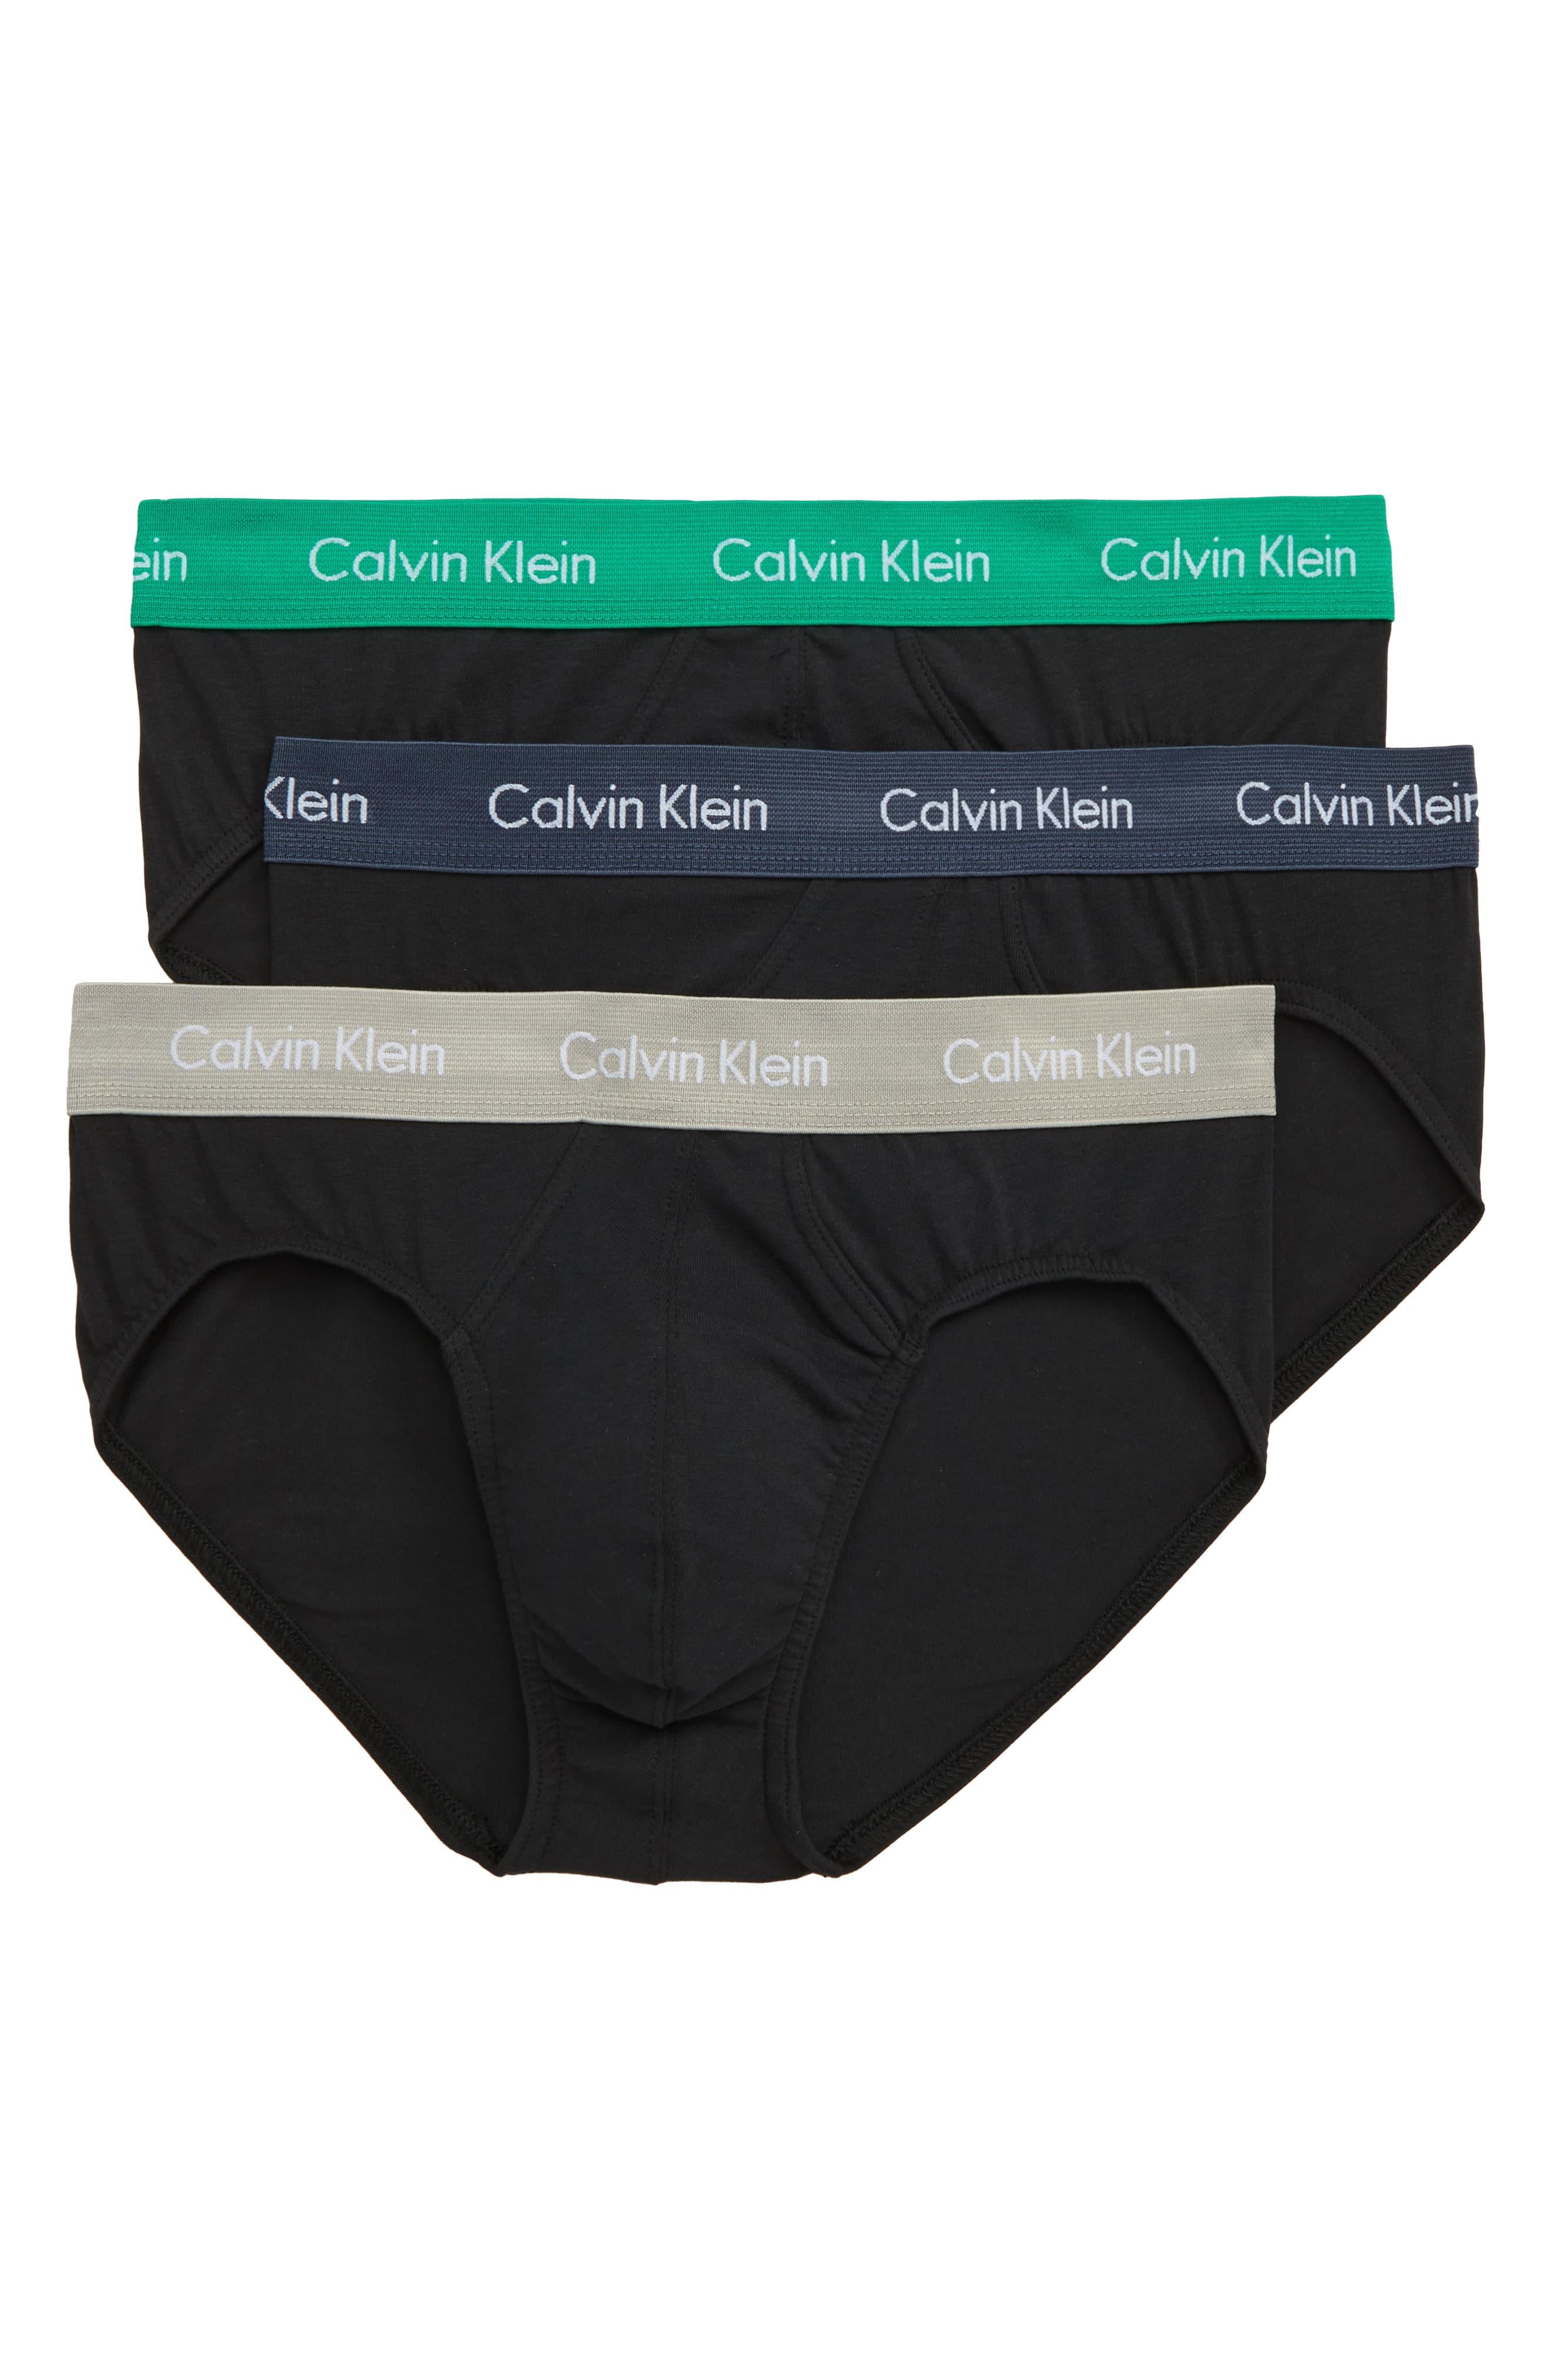 Calvin Klein 3-pack Hip Briefs in Black for Men - Lyst